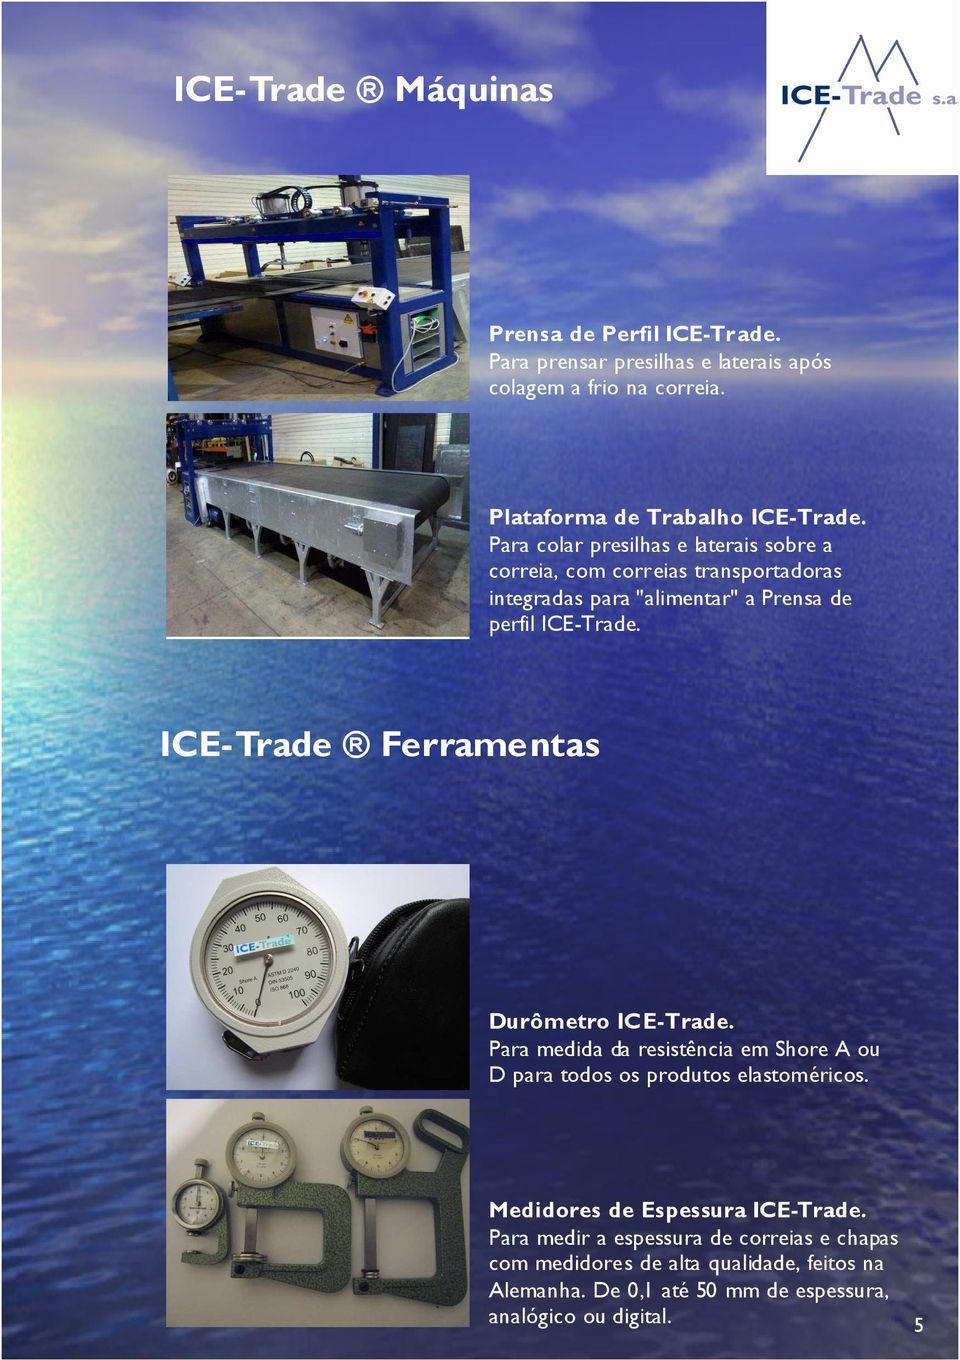 Prensa de perfil ICE-Trade Ferramentas Durômetro Para medida da resistência em Shore A ou D para todos os produtos elastoméricos.